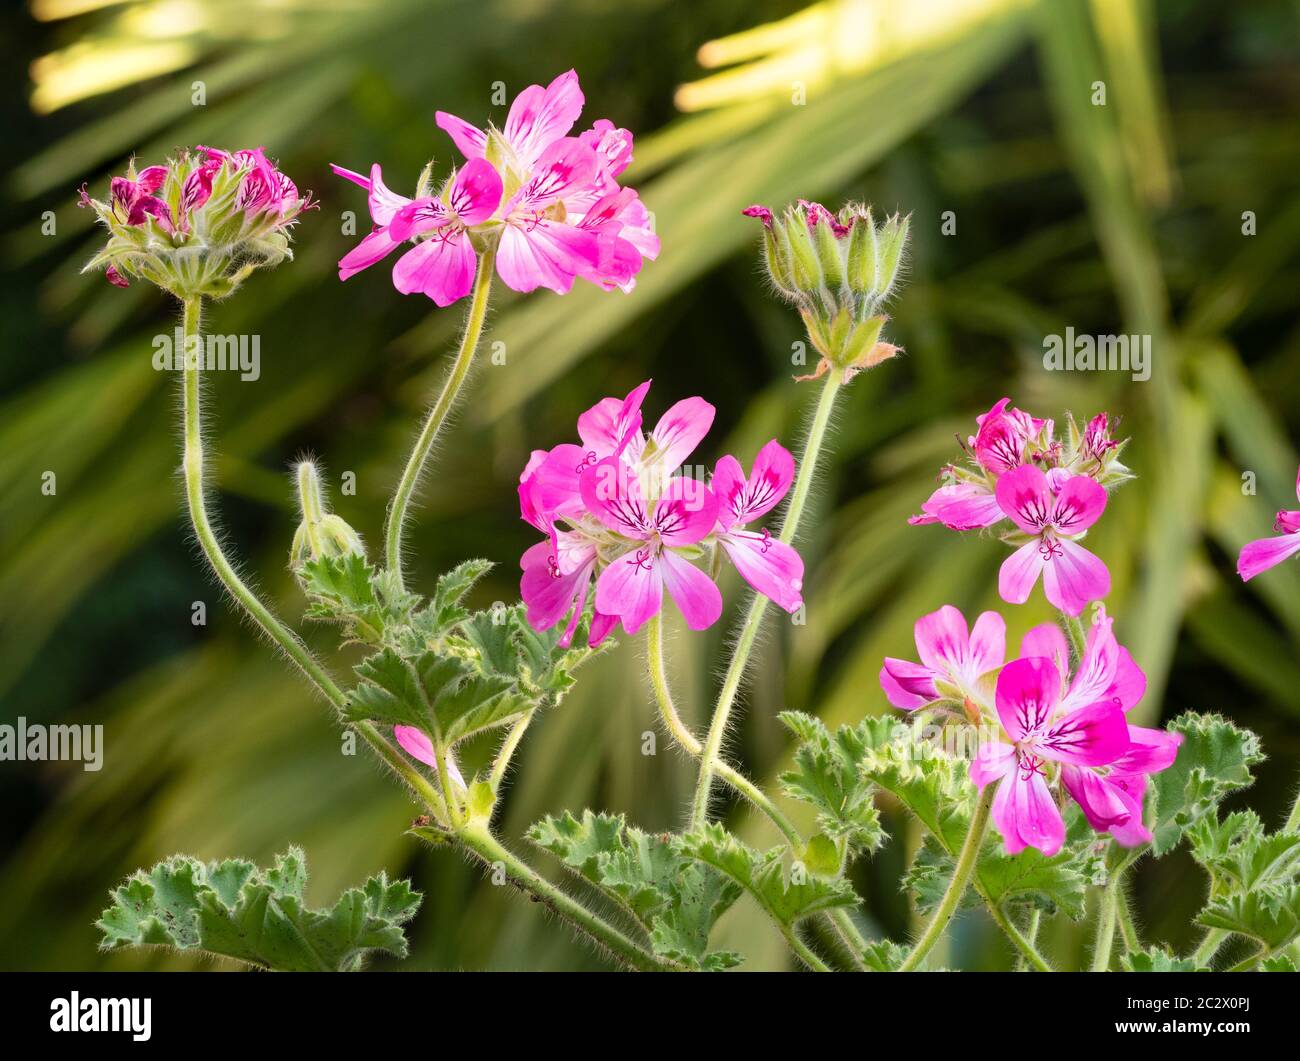 Pink summer flowers of the fragrant leaved scented geranium, Pelargonium 'Pink Capitatum' Stock Photo